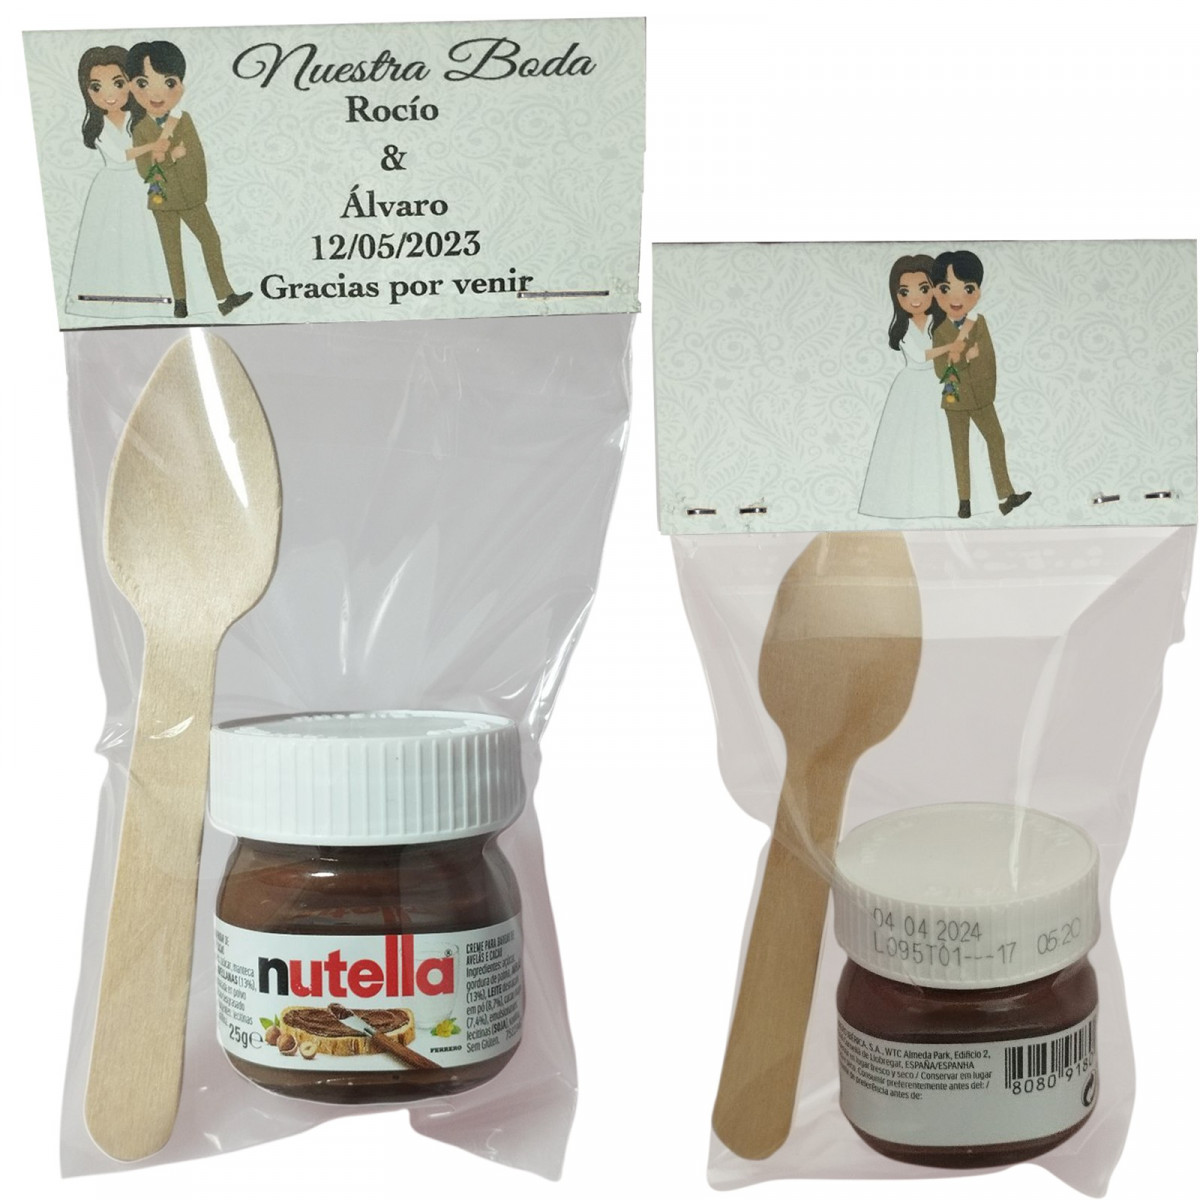 Nutella avec chuchara présenté dans un sachet transparent avec carton personnalisé